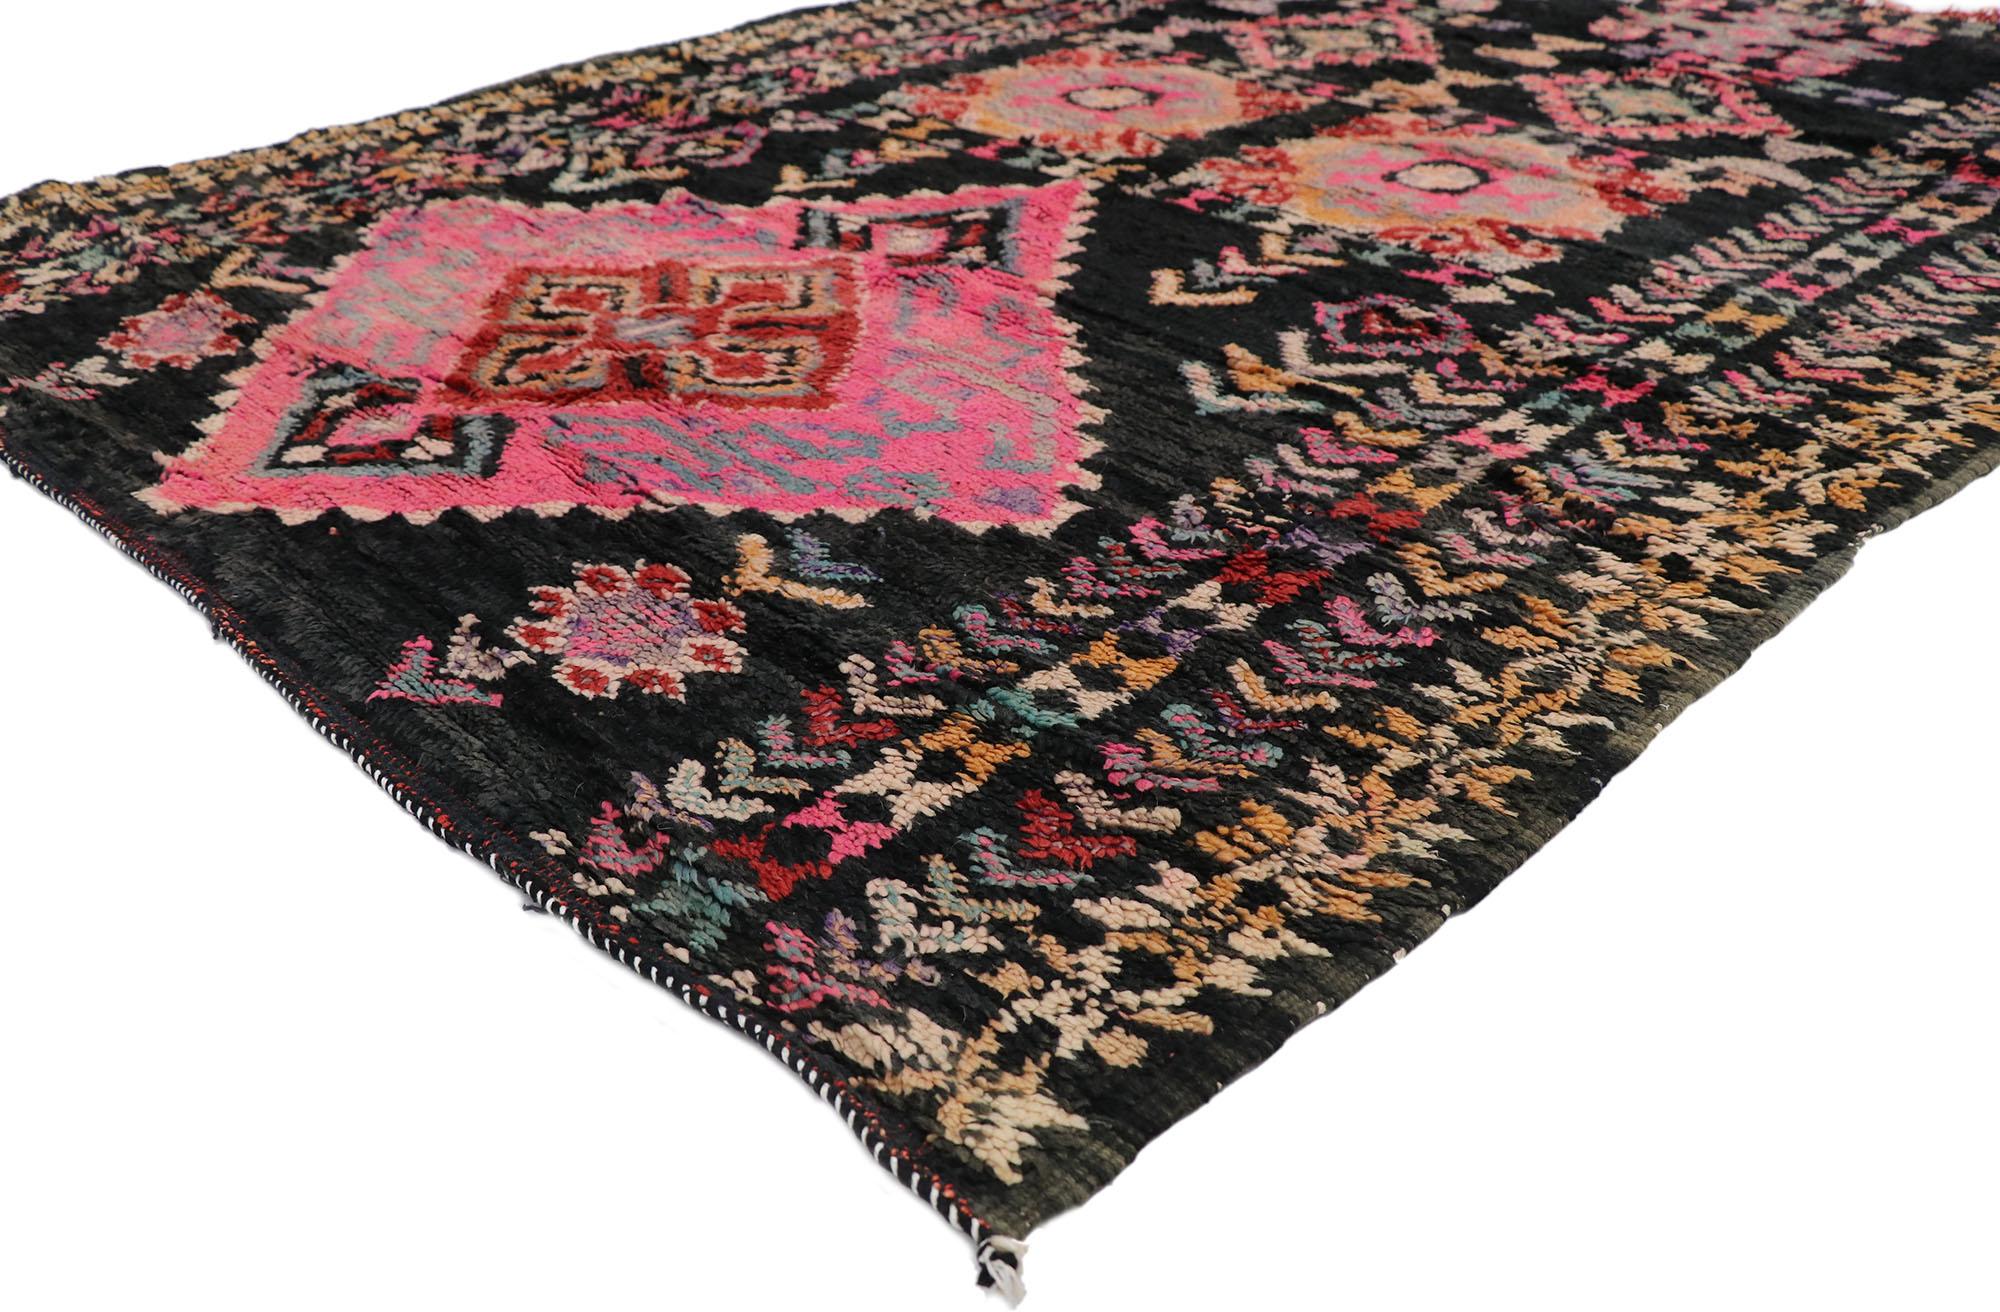 21259 Tapis marocain Vintage, 05'08 x 07'06.
Ce tapis marocain vintage en laine nouée à la main présente un design tribal audacieux, des détails et une texture incroyables. Il s'agit d'une vision captivante de la beauté du tissage. Le motif